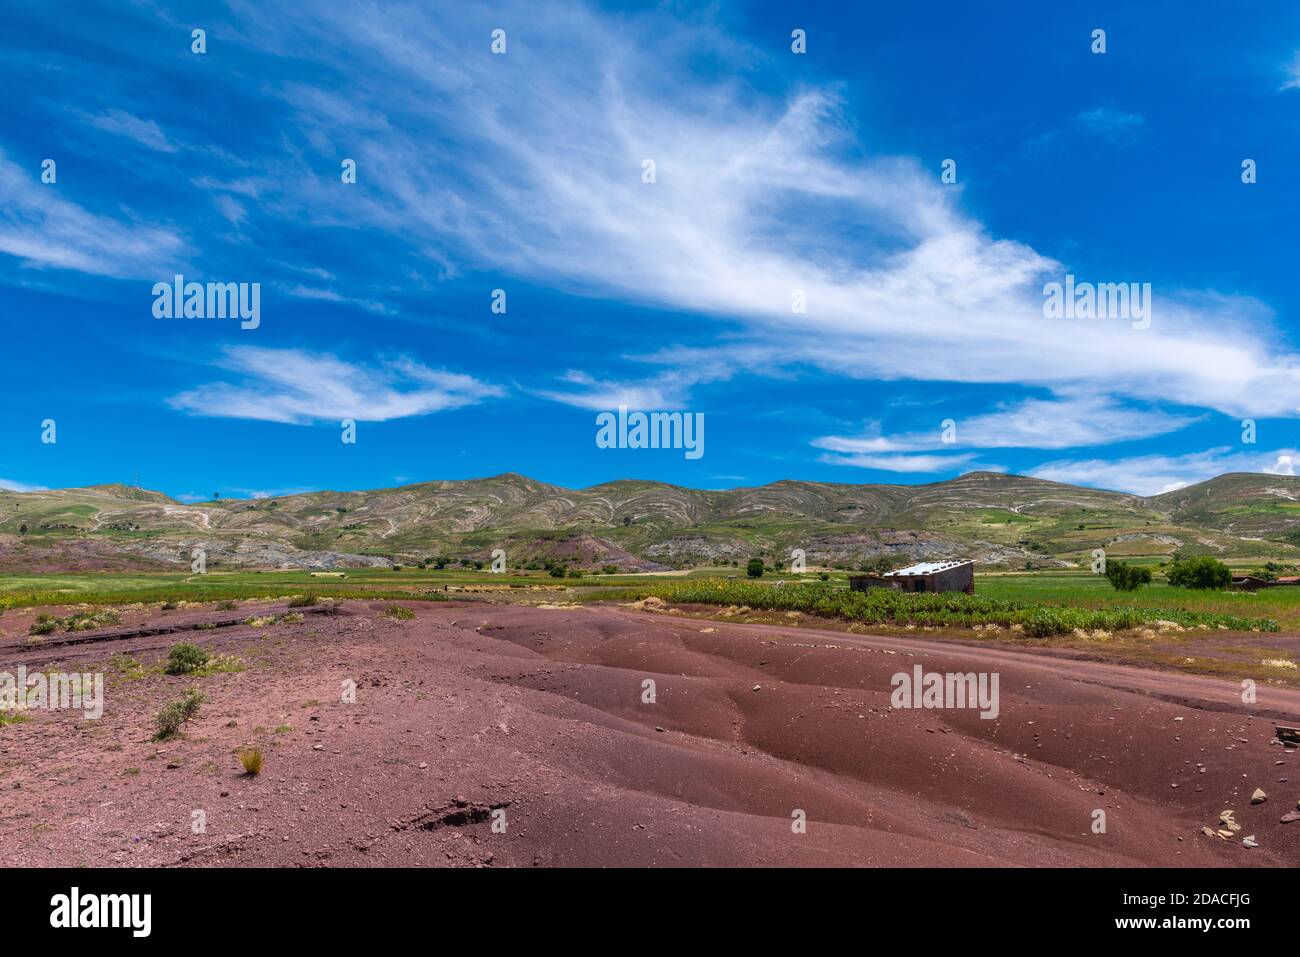 Agricultural landscape in the Maragua region, Departemento Sucre, Cordillera Central, Andes, Bolivia, Latin America Stock Photo